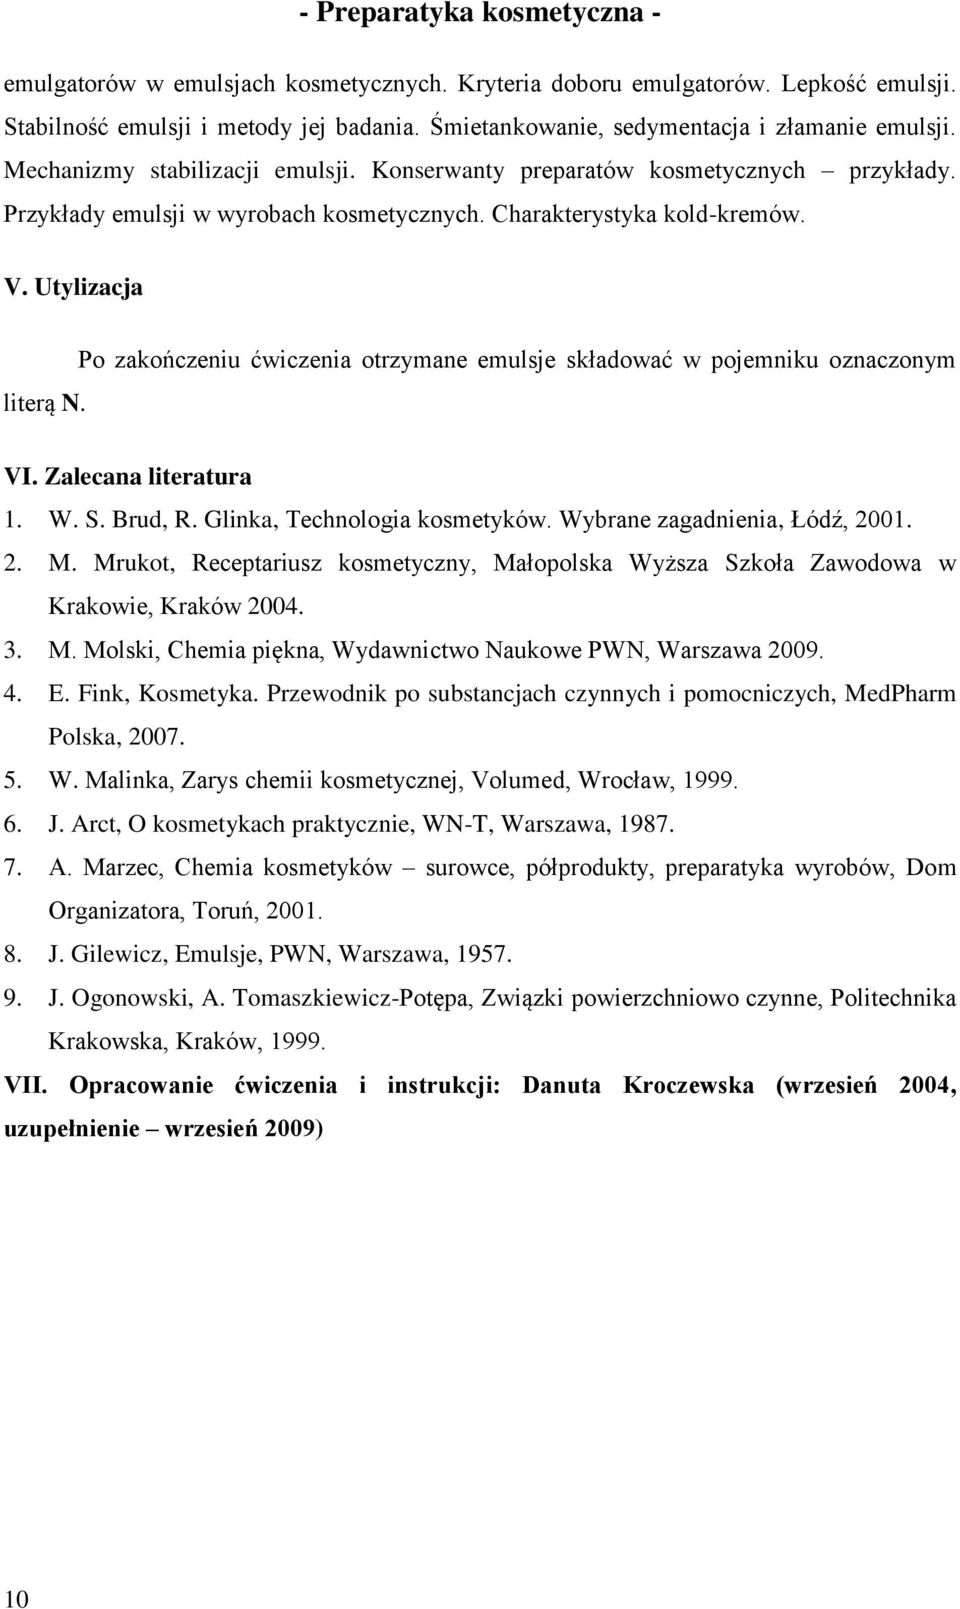 Po zakończeniu ćwiczenia otrzymane emulsje składować w pojemniku oznaczonym VI. Zalecana literatura 1. W. S. Brud, R. Glinka, Technologia kosmetyków. Wybrane zagadnienia, Łódź, 2001. 2. M.